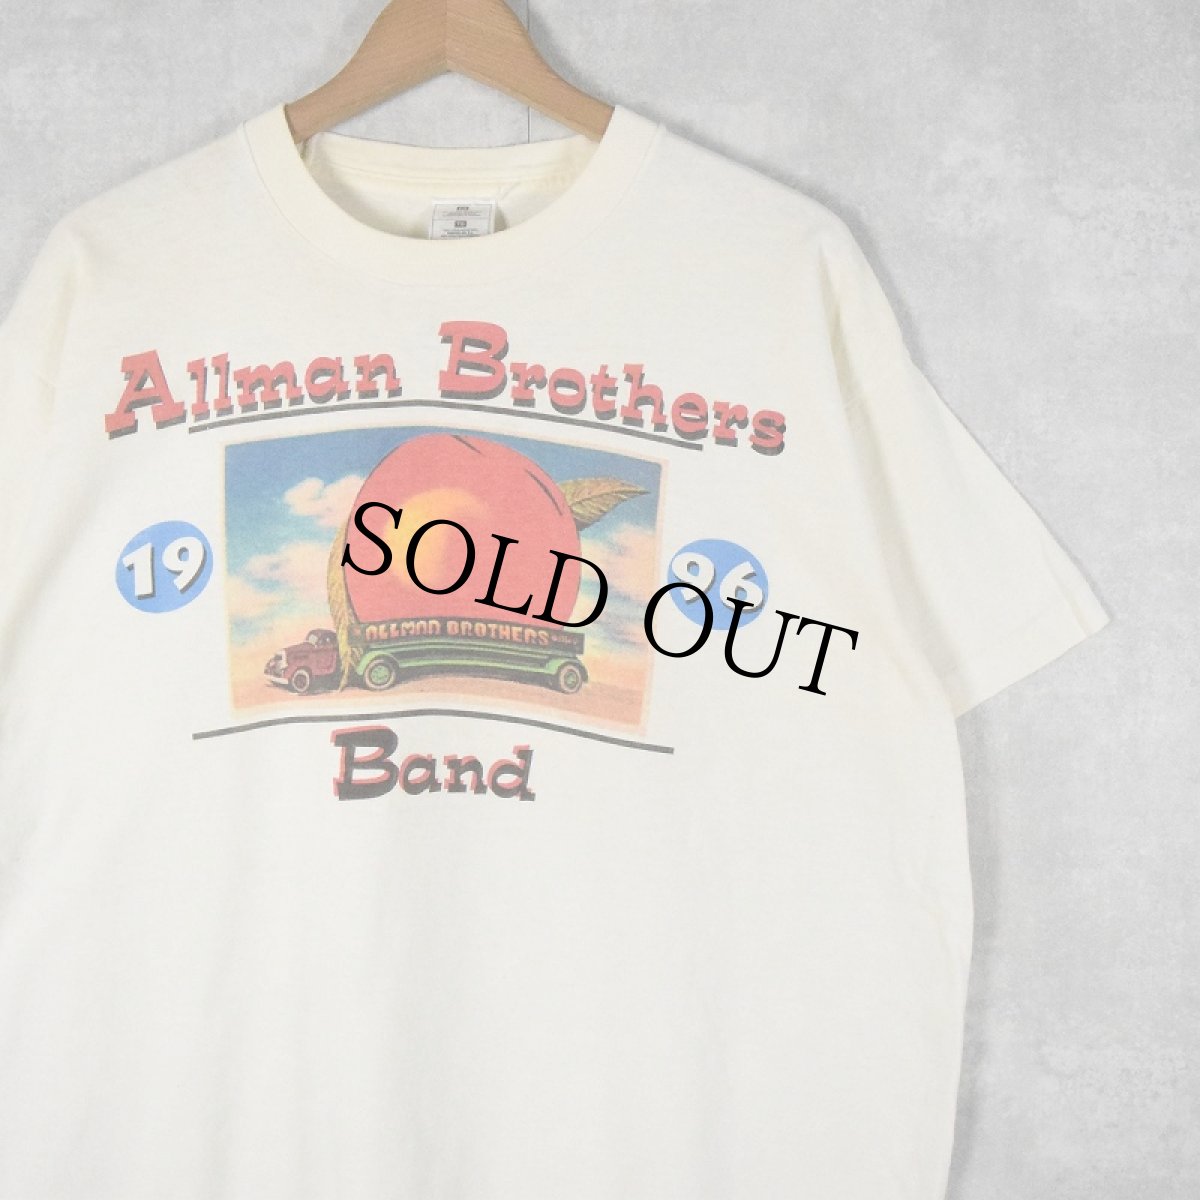 画像1: 90's ALLMAN BROTHERS BAND USA製 "1996 Tour" ブルースロックバンドツアープリントTシャツ XL (1)